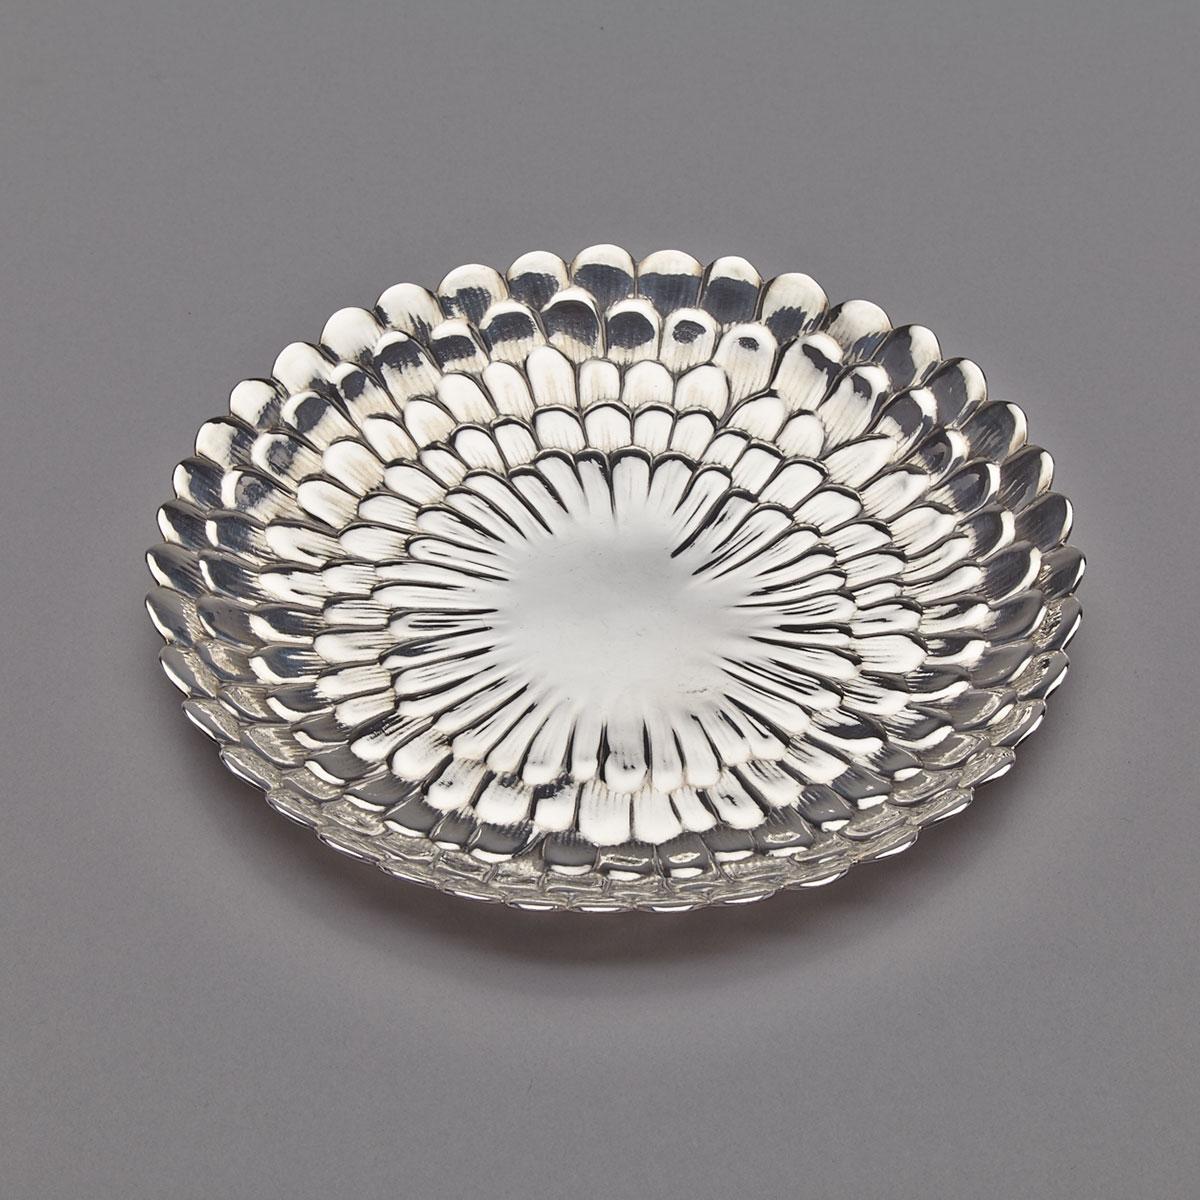 American Silver Floriform Dish, Tiffany & Co., New York, N.Y., c.1900